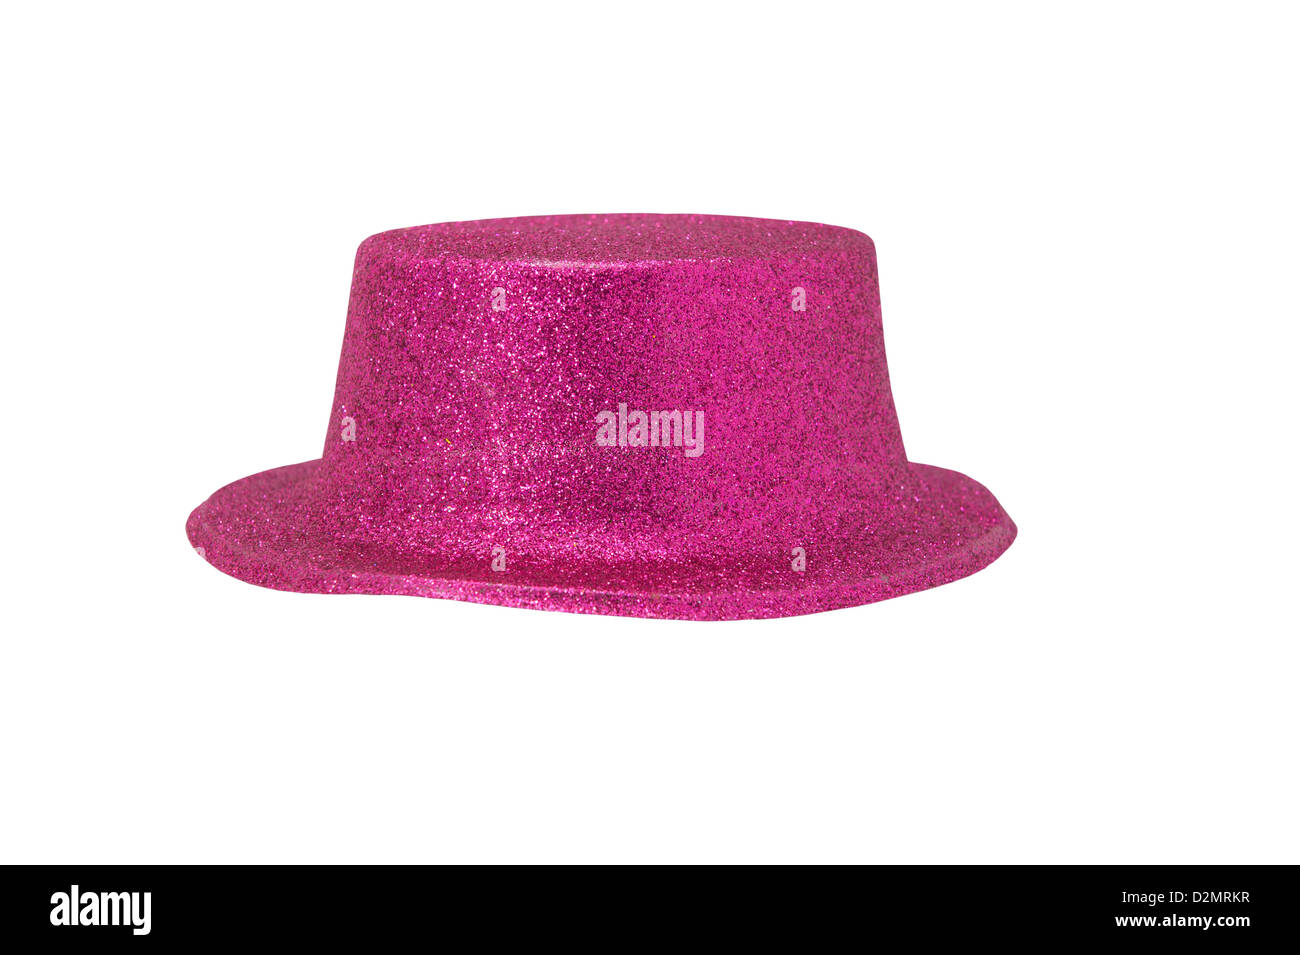 Pink metallic Banque d'images détourées - Alamy